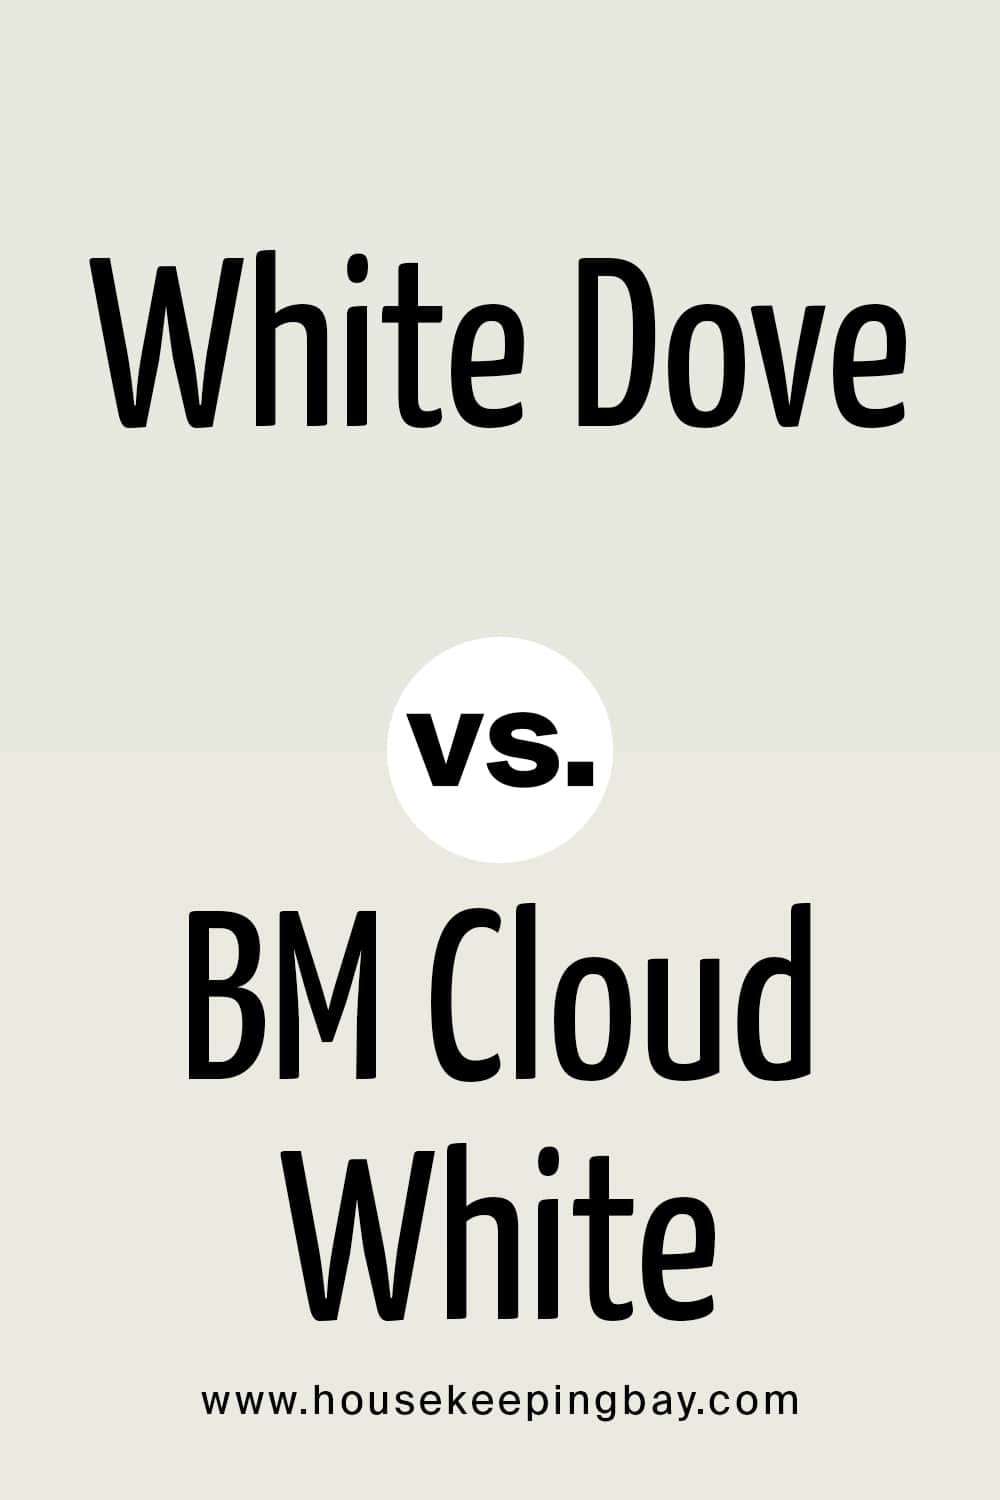 BM Cloud White vs White Dove